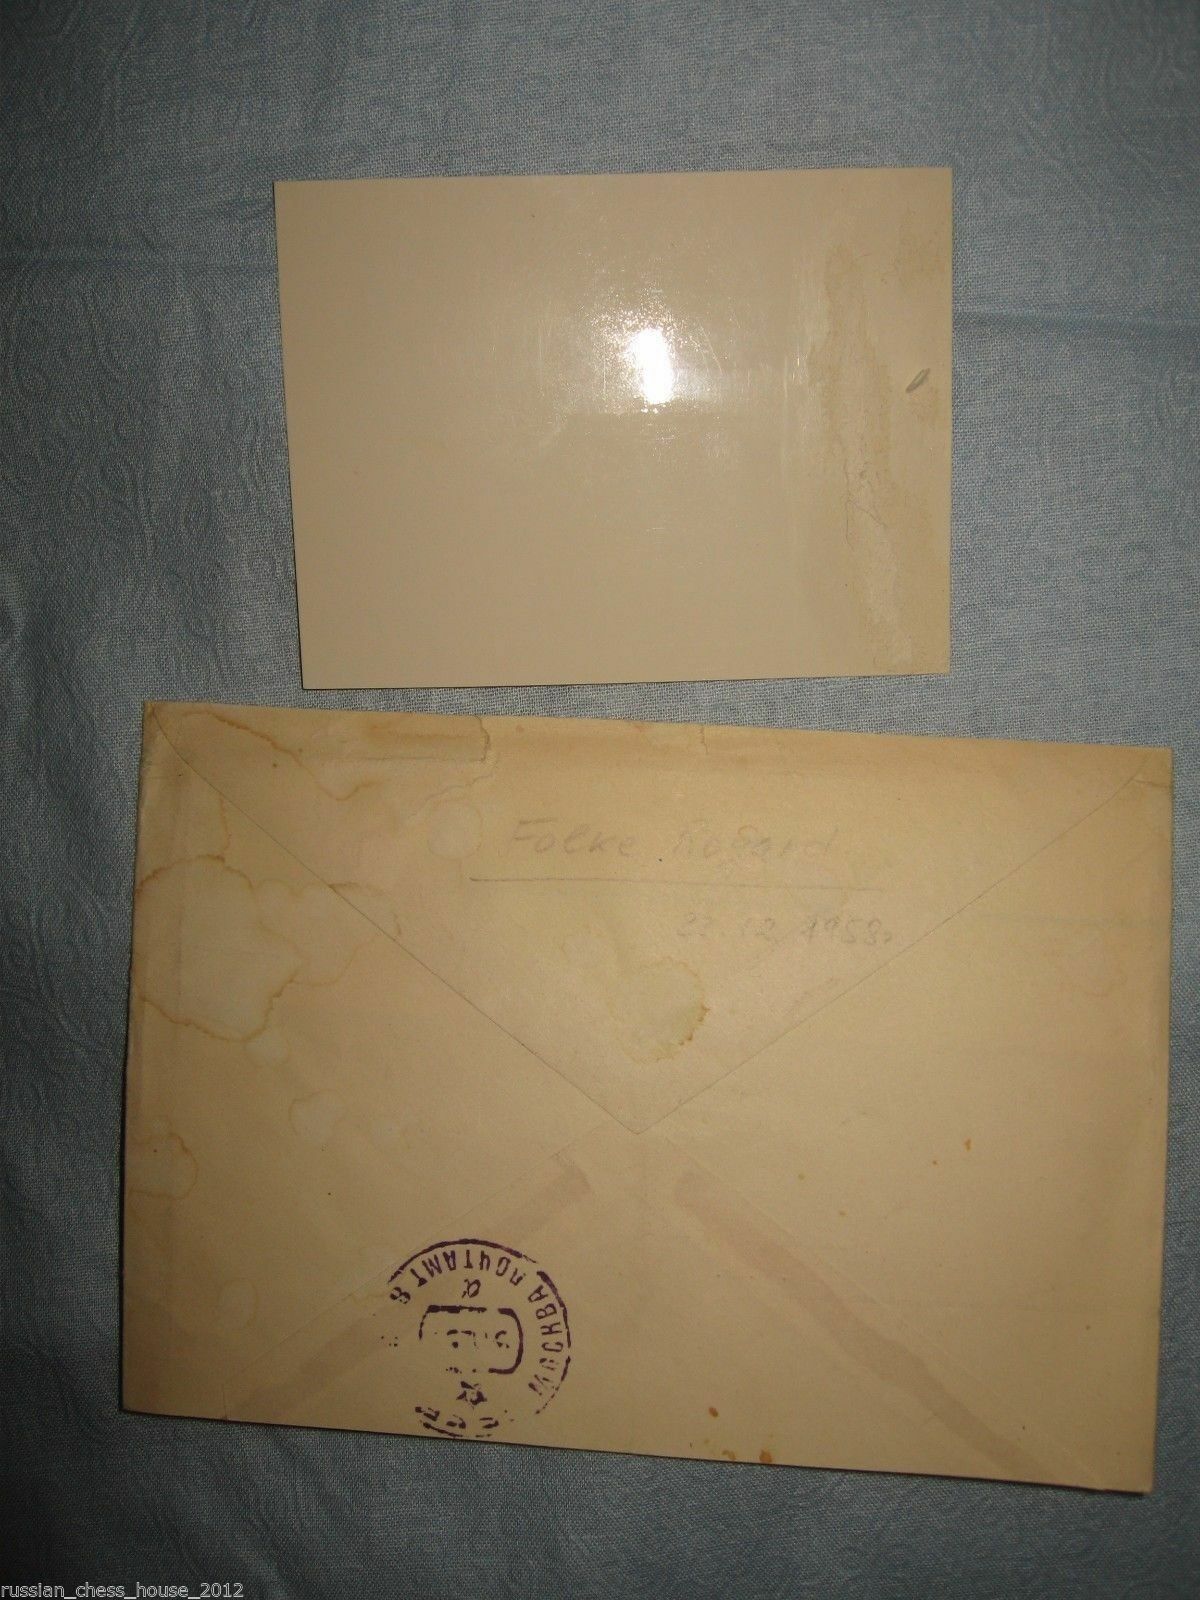 11886.The envelope from FIDE president to Elisaveta Bykova 1959 on french